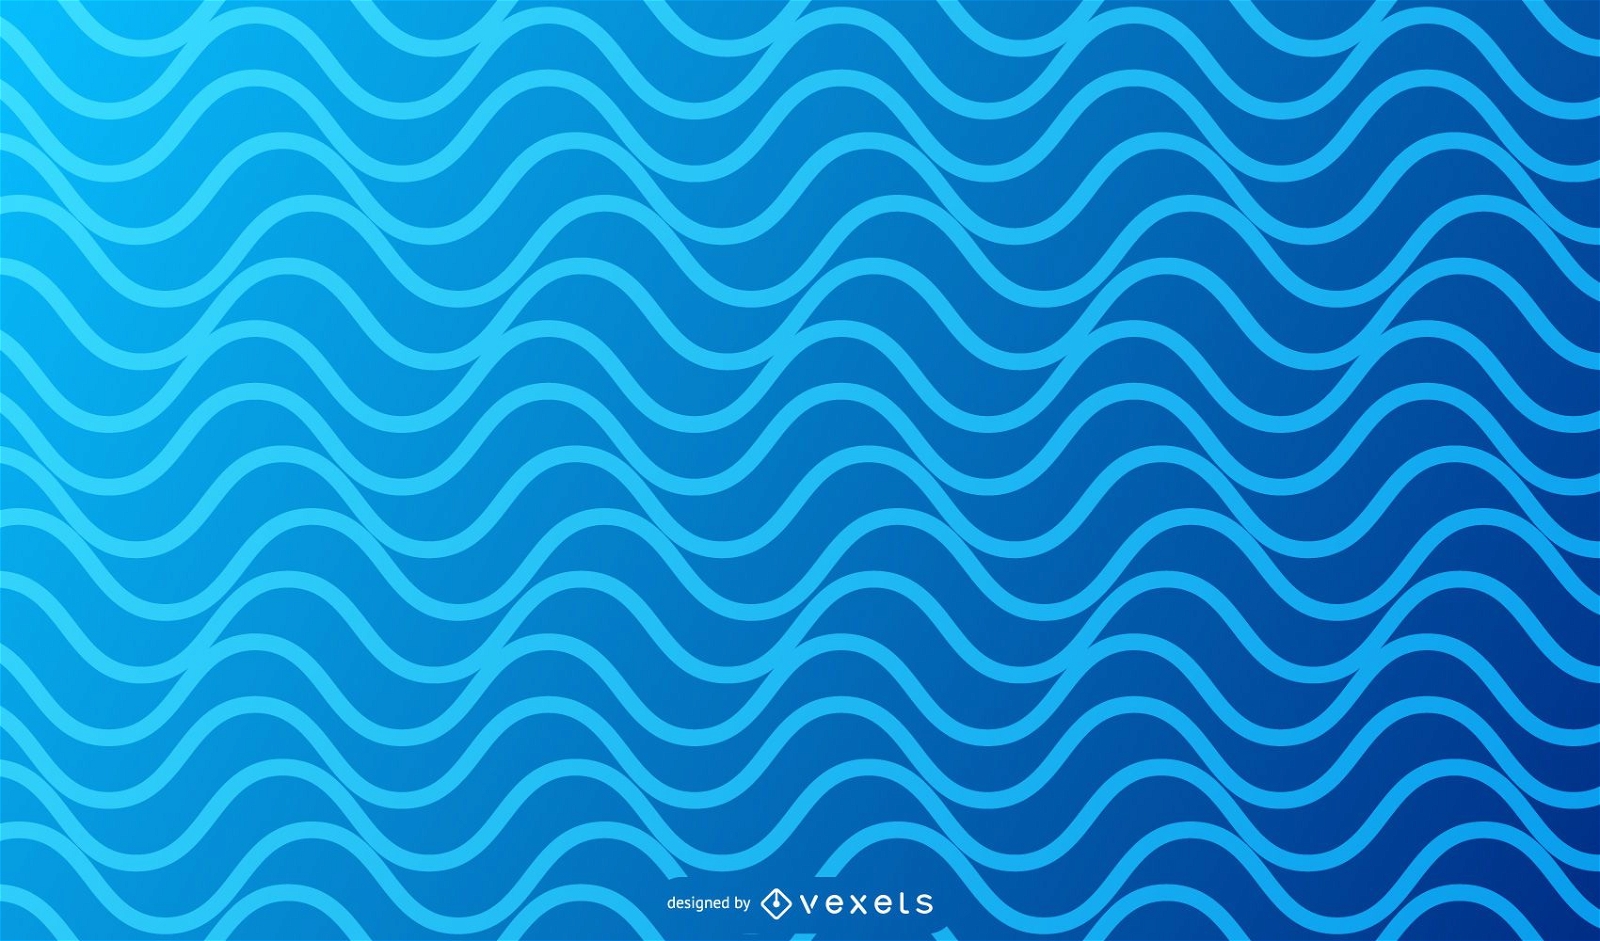 Blue Simplistic Wave background